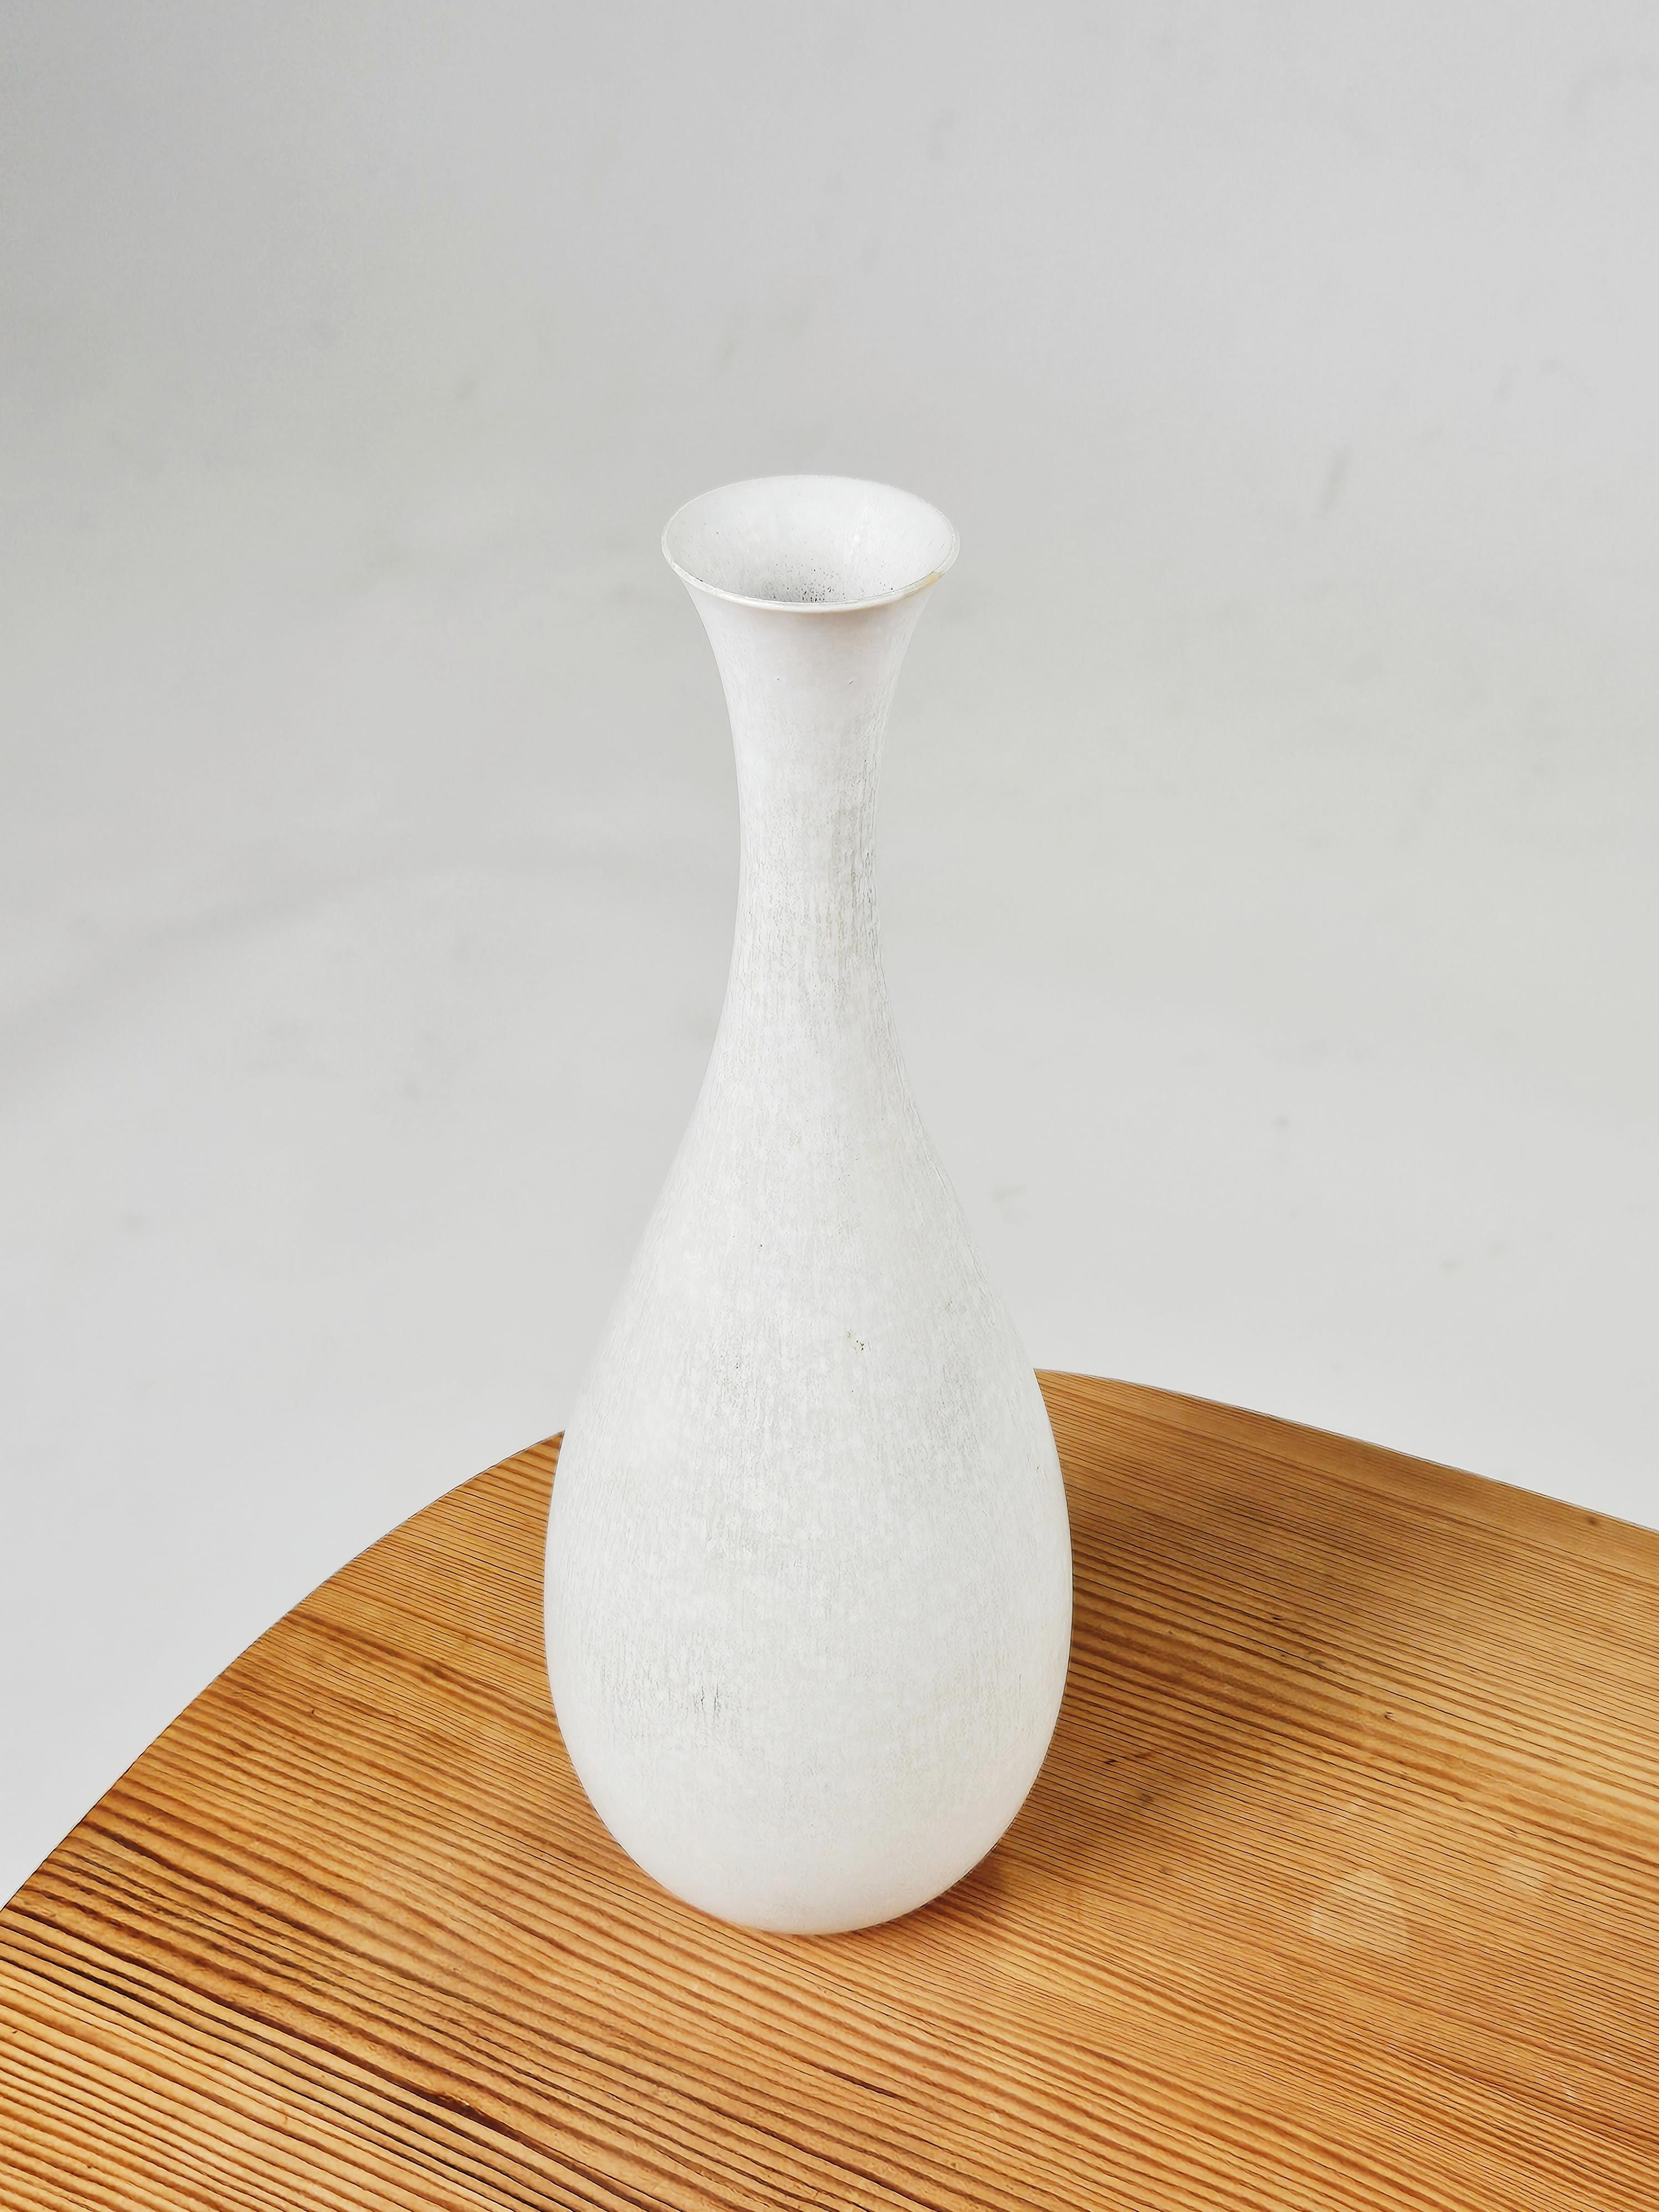 Schöne Vase aus weißem Steingut, entworfen von Carl-Harry Stålhane für Rörstrand, Schweden, 1960er Jahre. 

Passt perfekt zu anderen Scandinavian Modern Produkten aus dieser Zeit. 

Seltenes Modell mit begehrter weißer Glasur.

Einige minimale